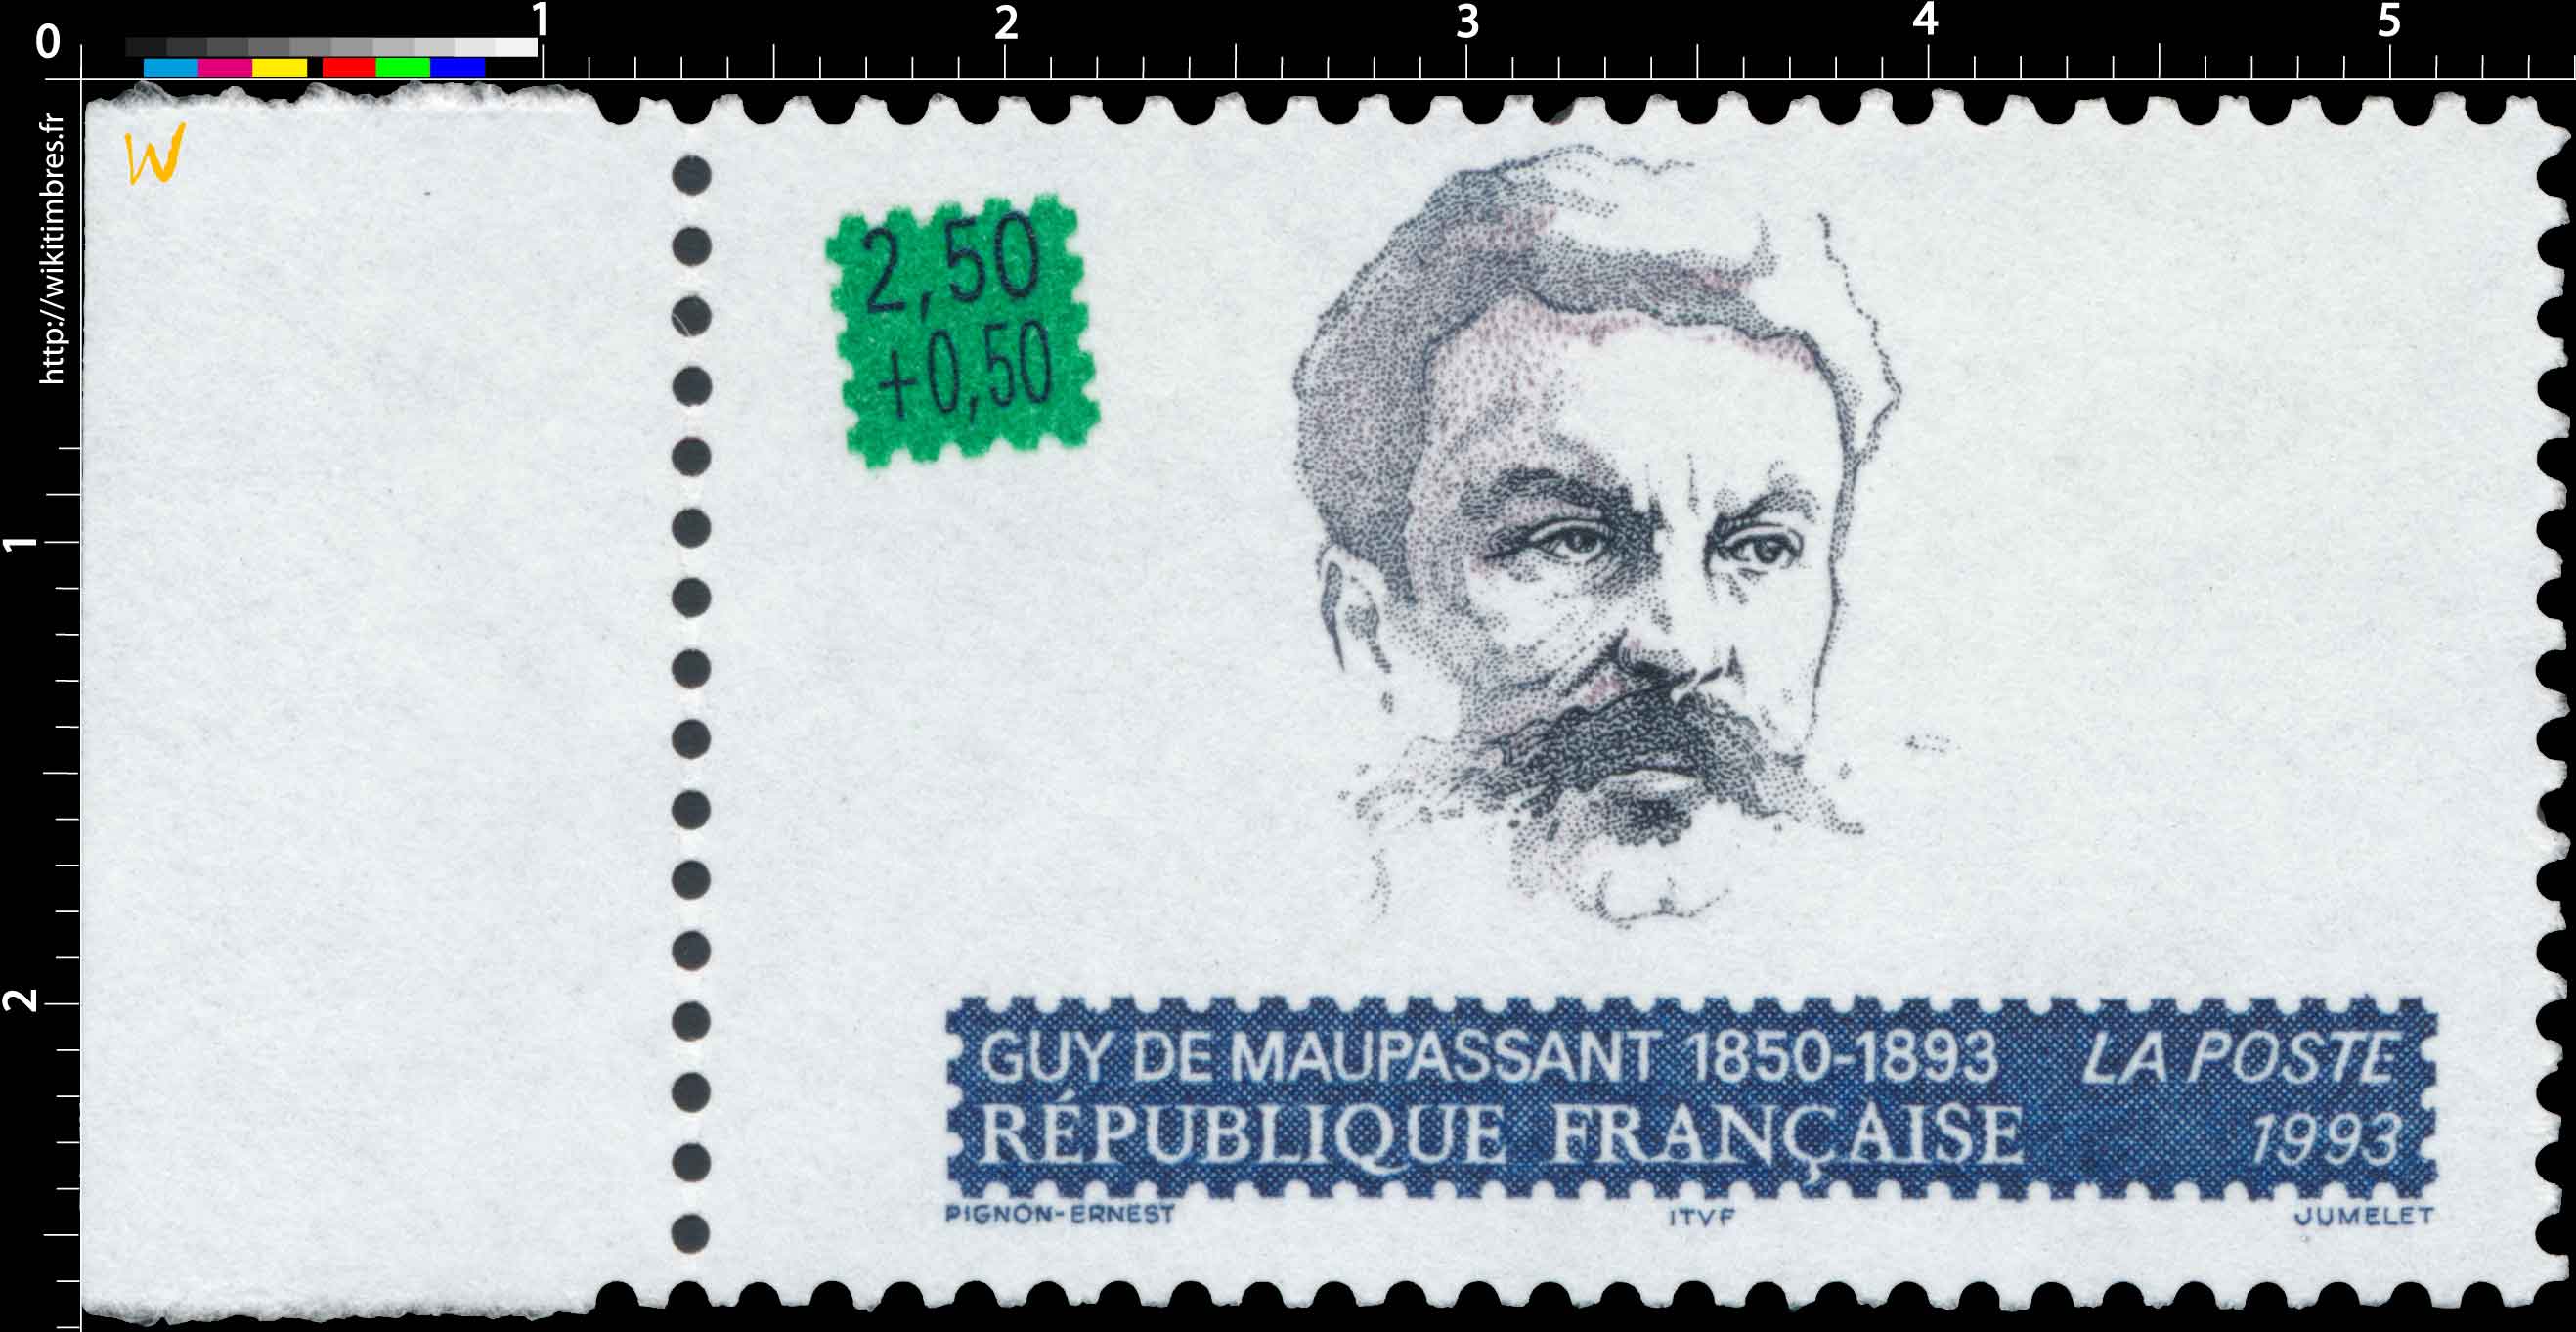 1993 GUY DE MAUPASSANT 1850-1893